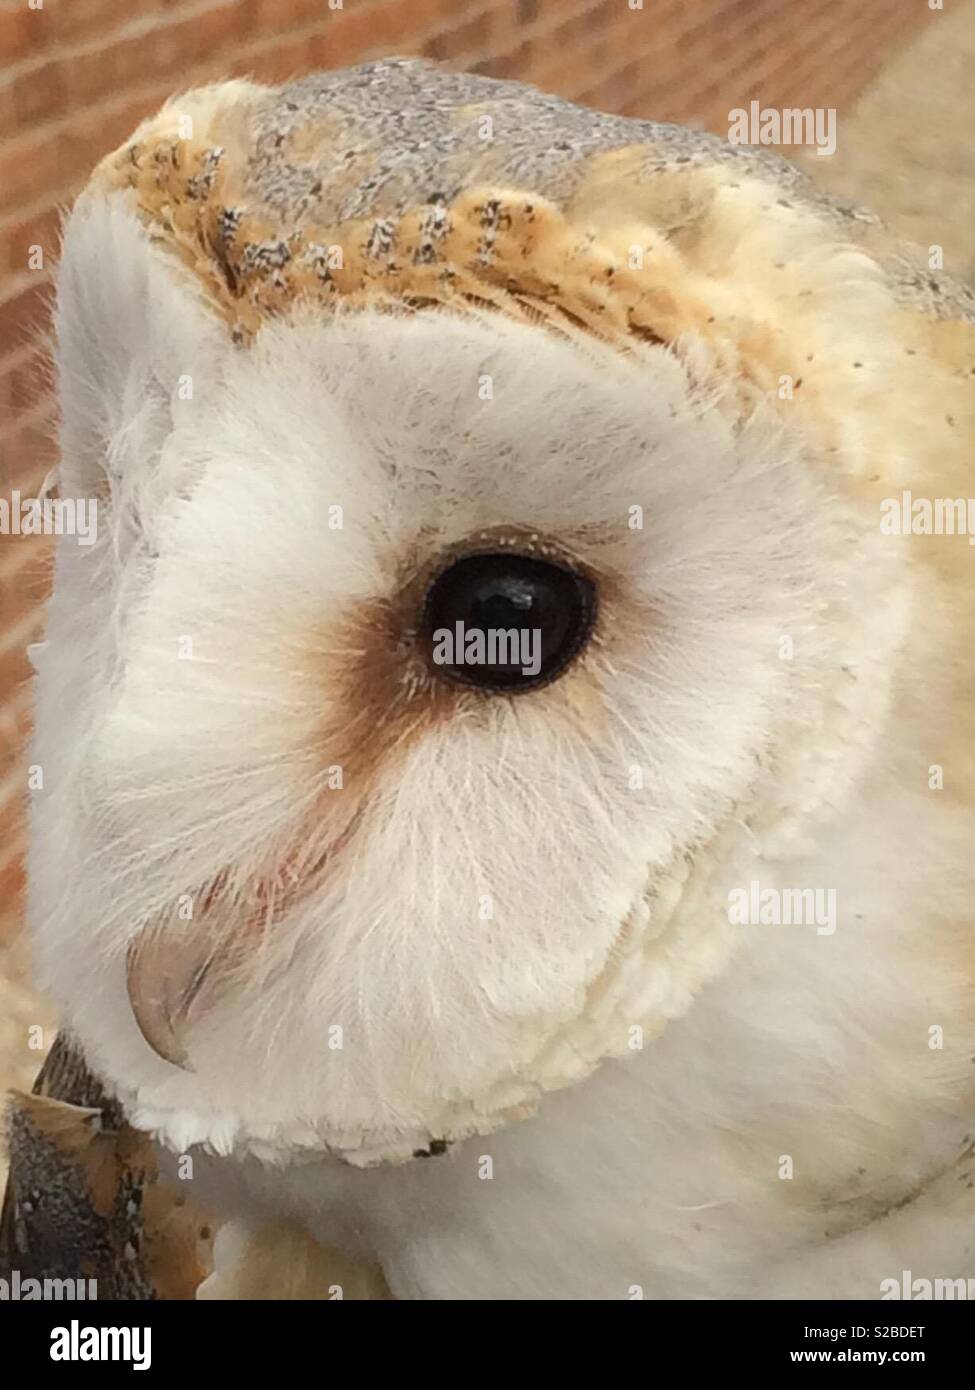 Barn owl head close-up Stock Photo